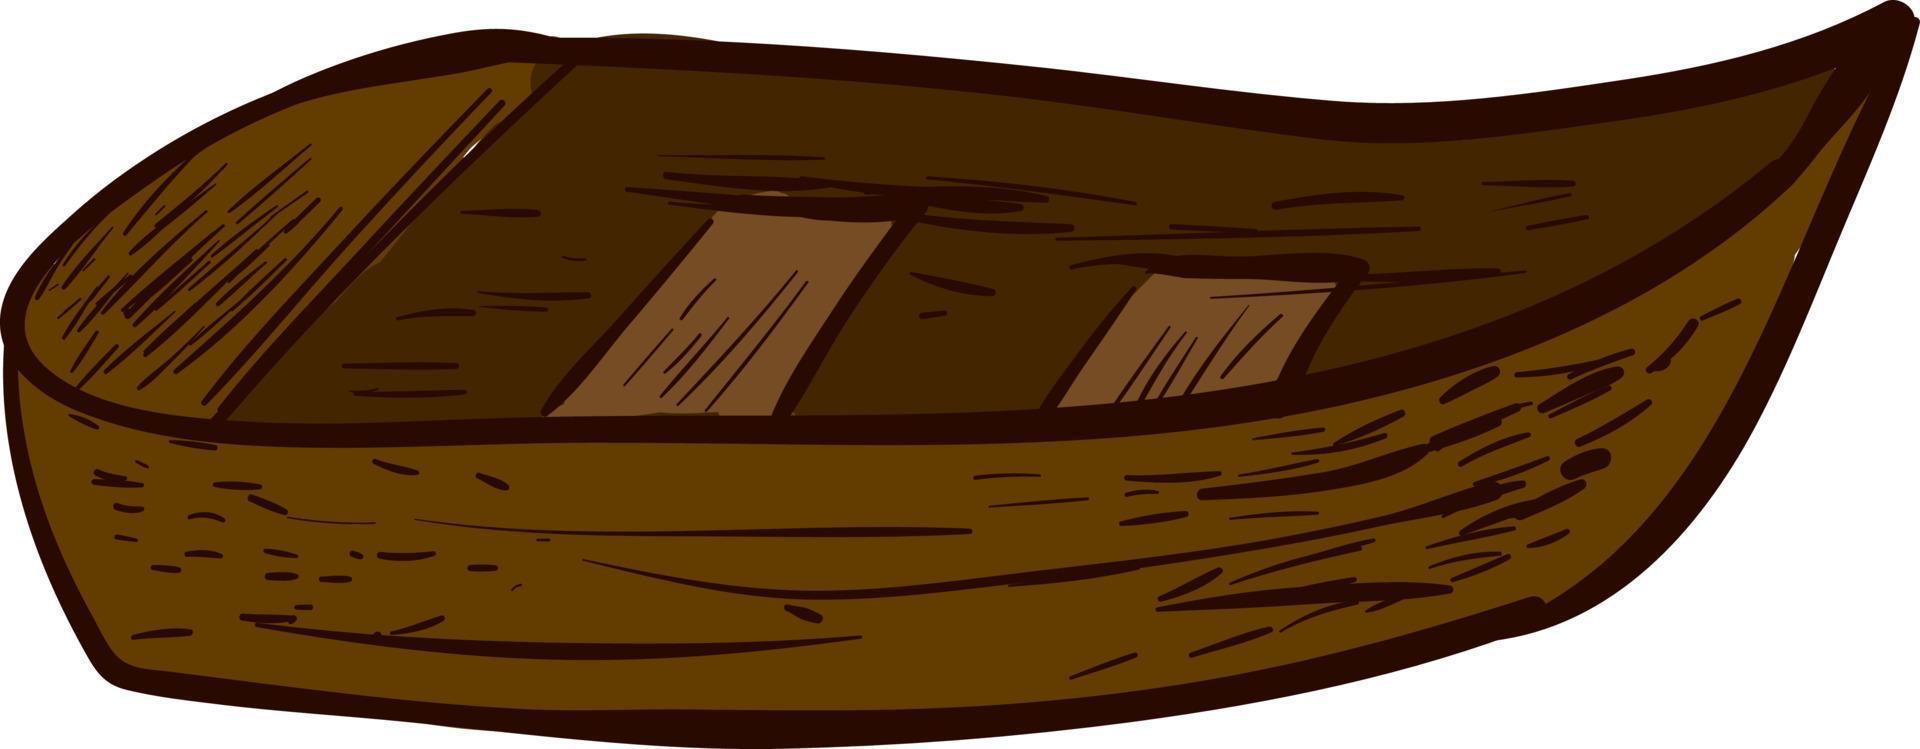 trä- båt, illustration, vektor på vit bakgrund.